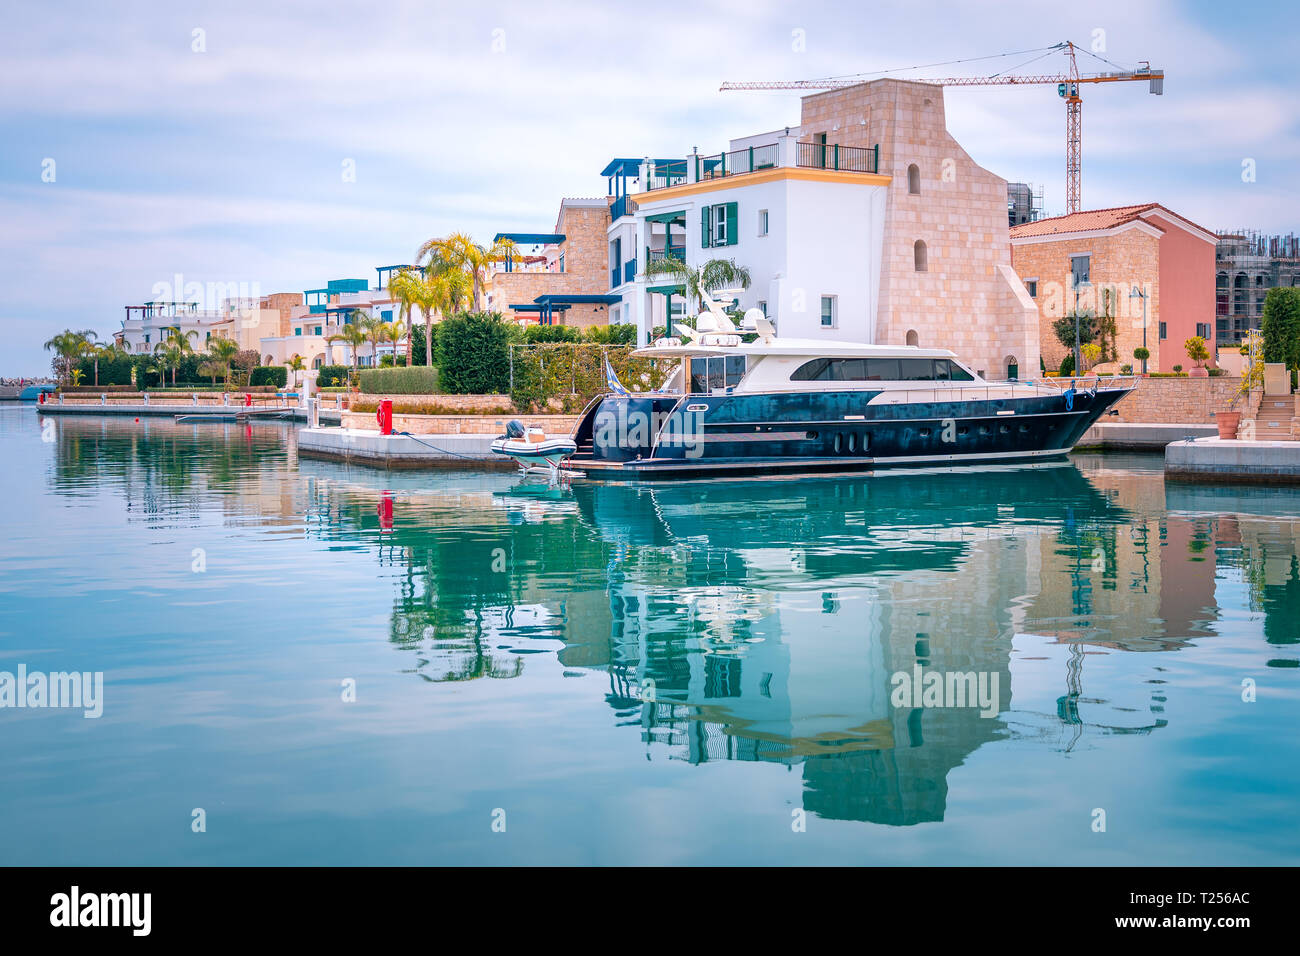 Belle vue sur la Marina, Limassol Chypre. Dans la vie moderne de luxe, nouveau port avec bateaux, restaurants, boutiques et promenade au bord de l'eau. Banque D'Images